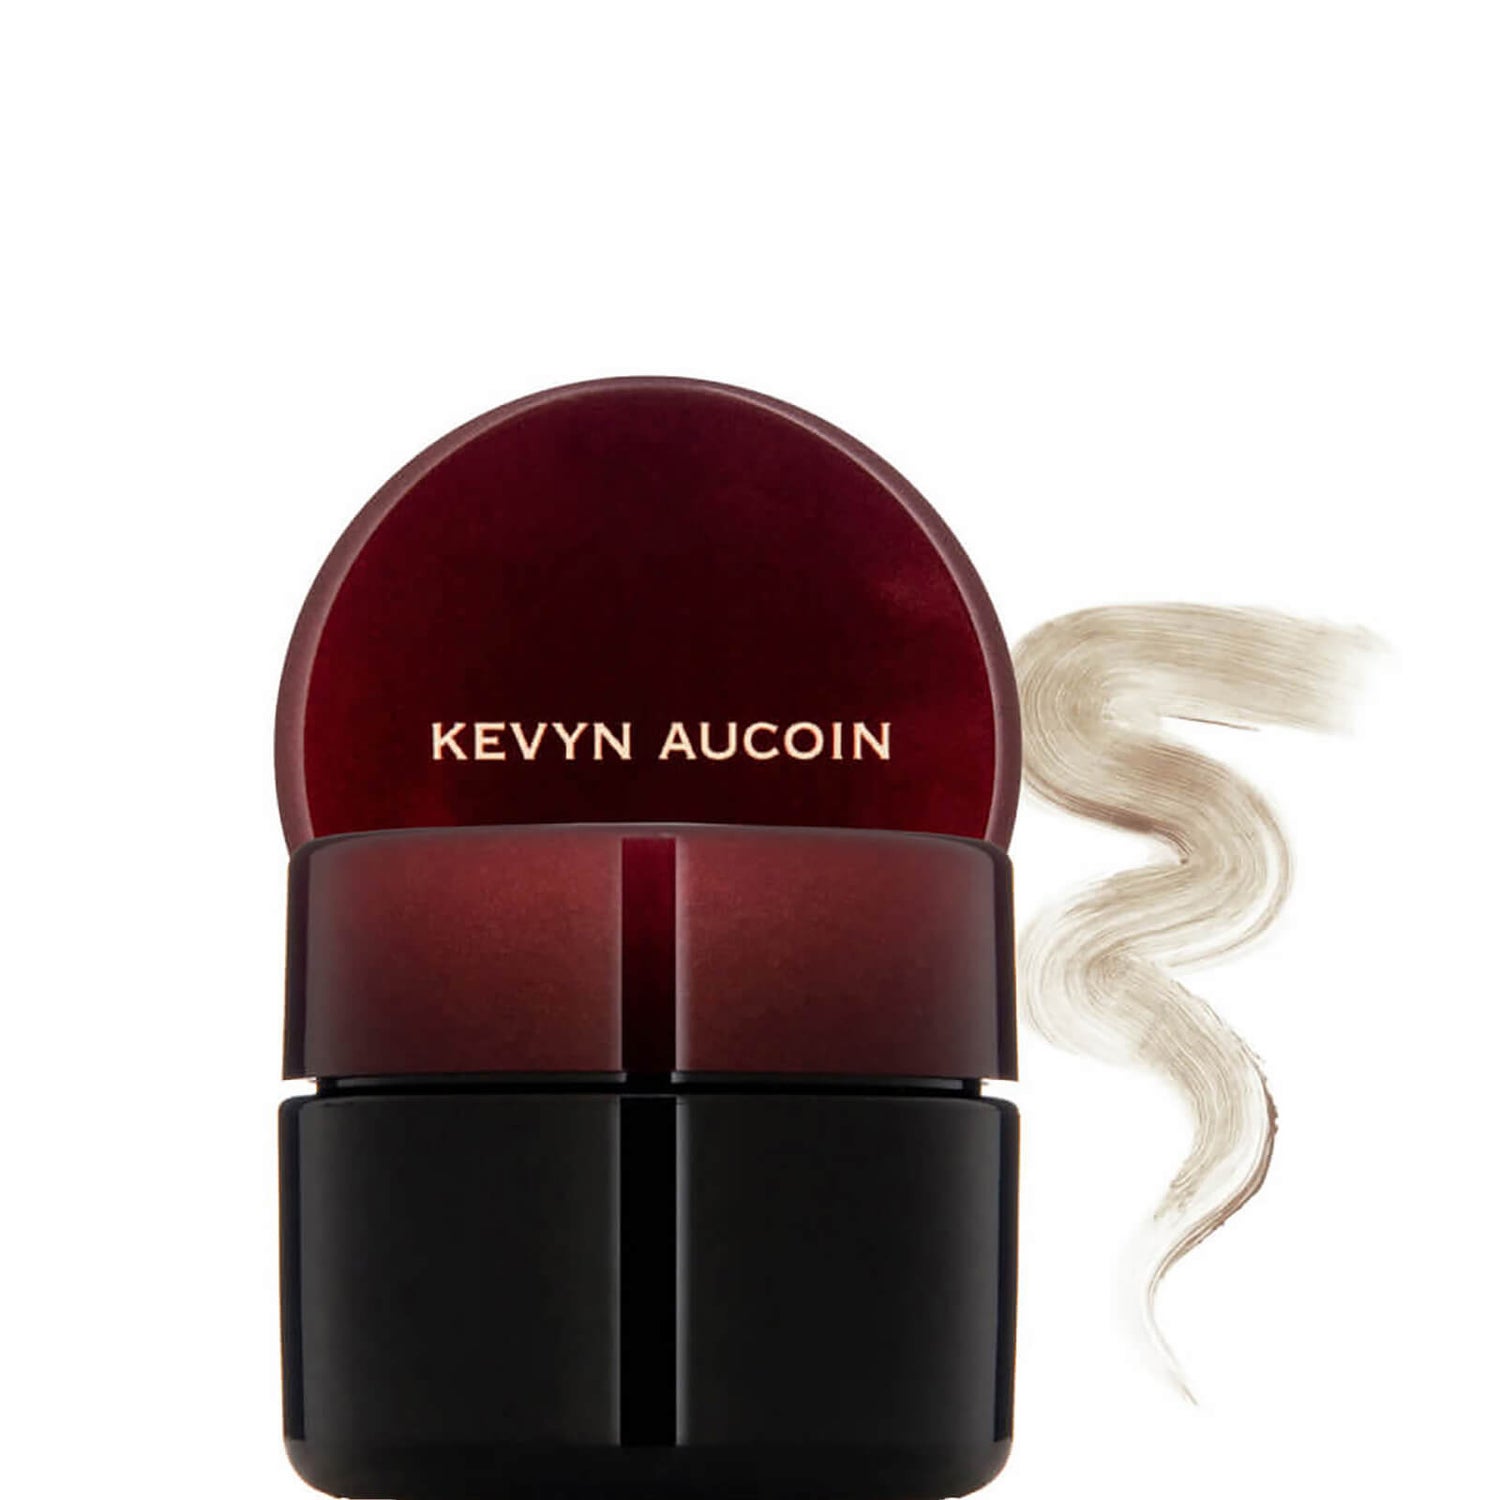 Kevyn Aucoin The Sensual Skin Enhancer (0.63 oz.)